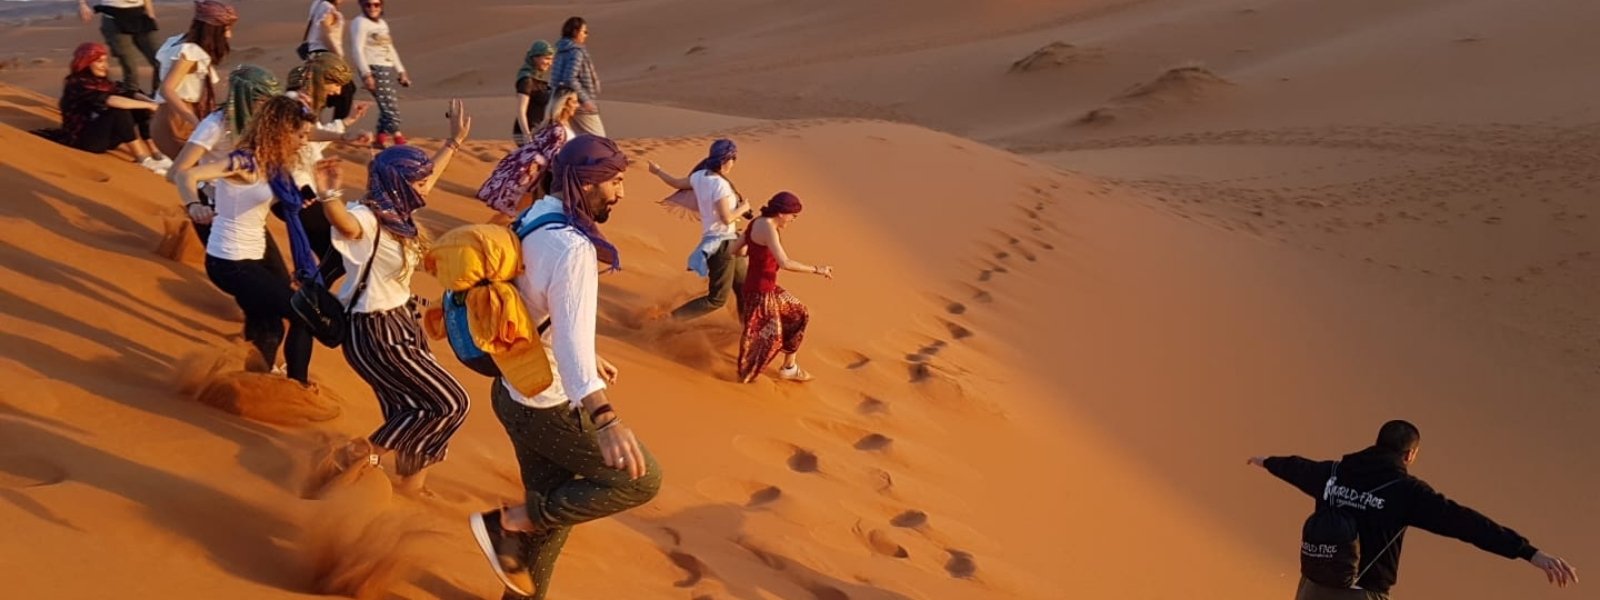 Viaggi di gruppo in Marocco